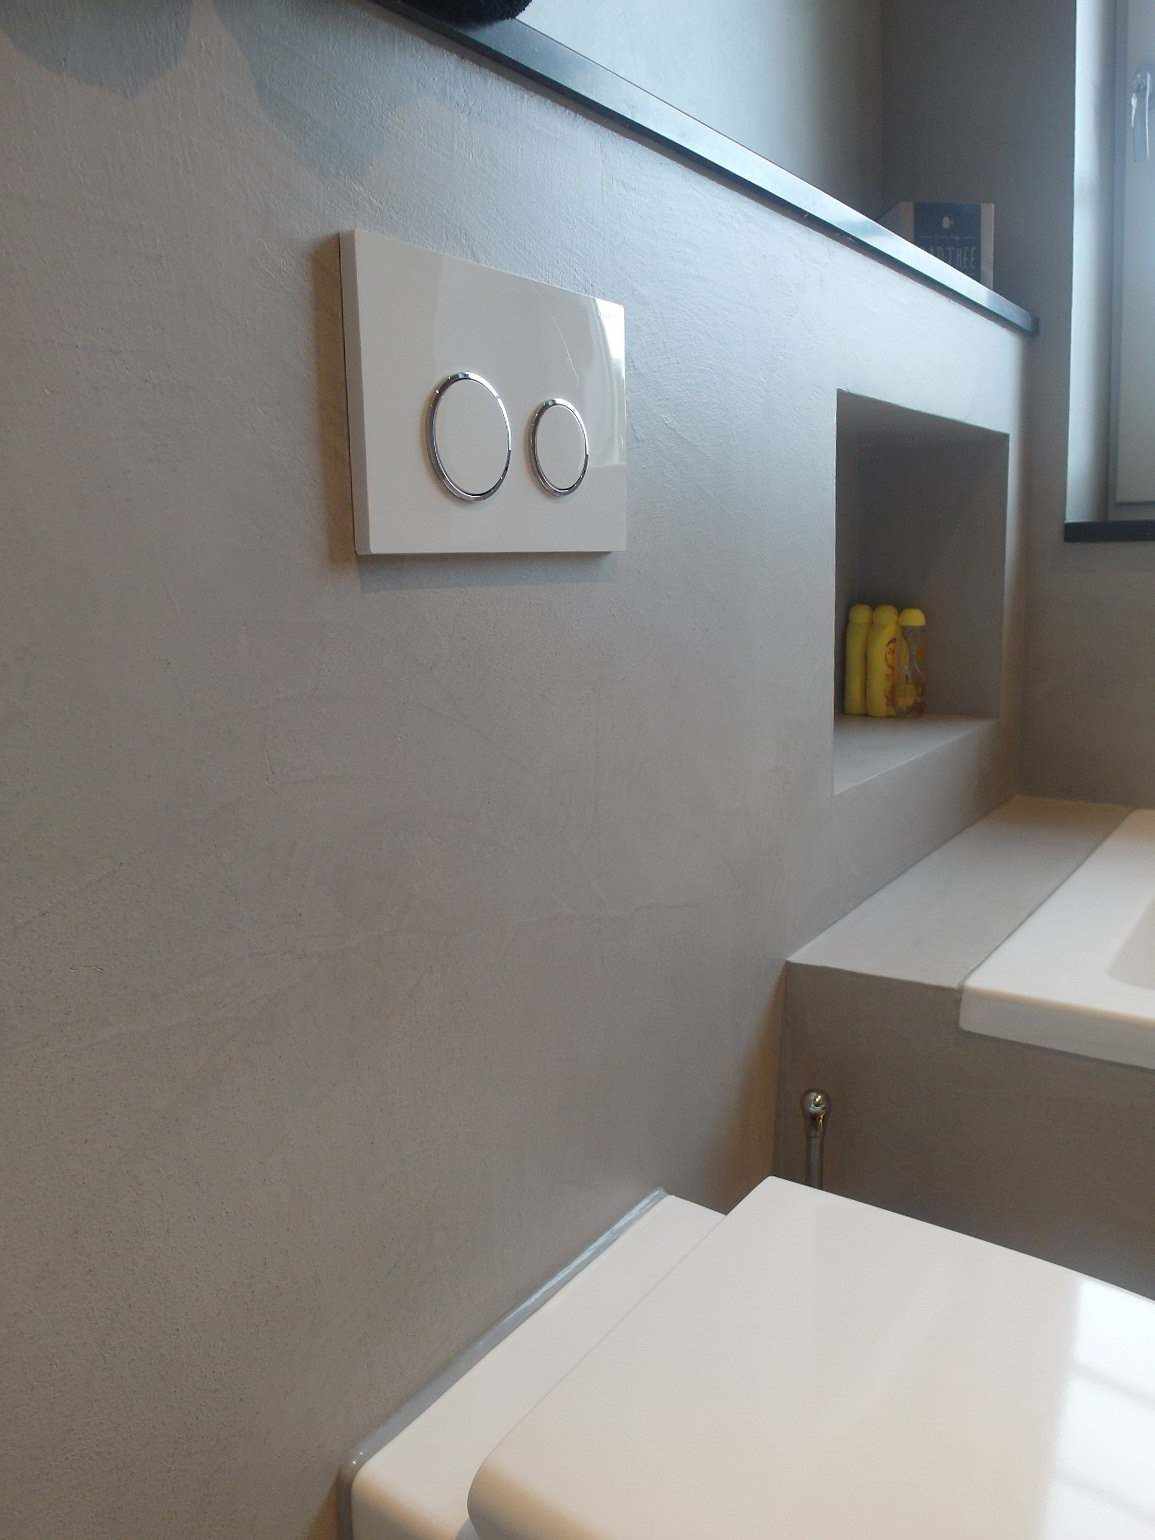 Mikrocement na ścianie i meblach w łazience w Holandii w projekcie Decas.